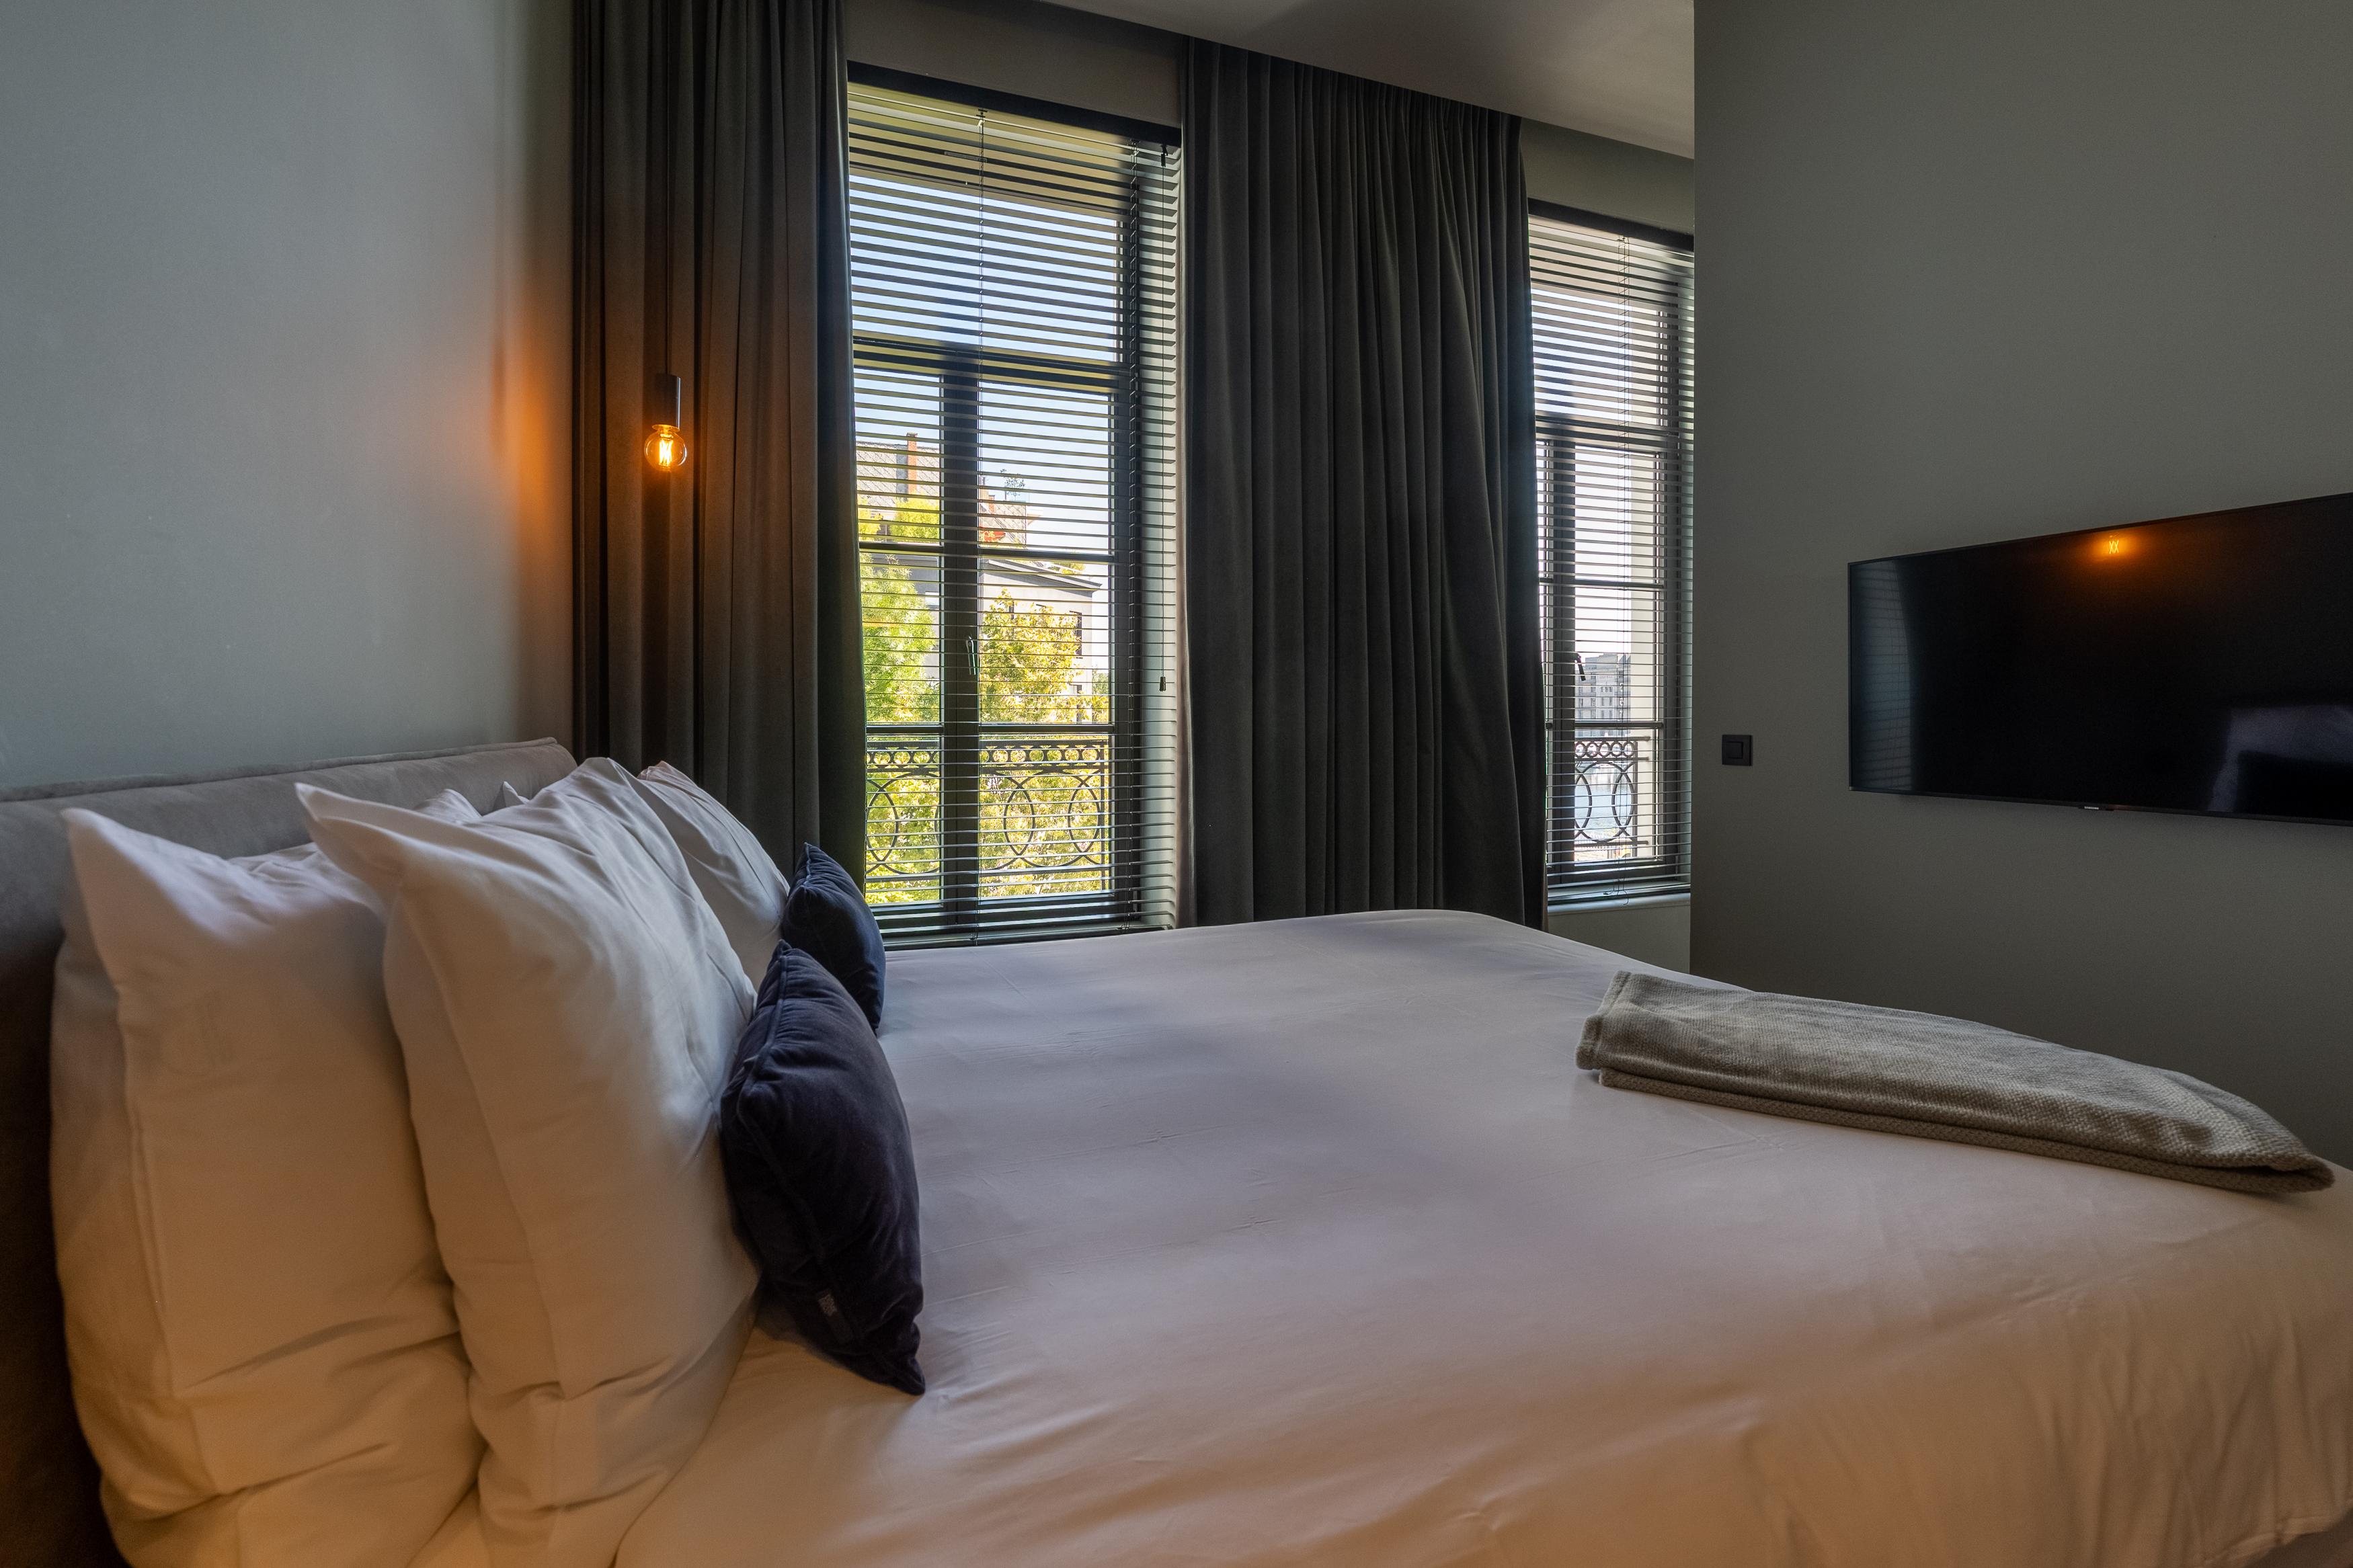 Ontdek onze Charming Room bij U Eat U Sleep, een prachtig ingerichte kamer met een sfeervol interieur en uitzicht op de omgeving. 